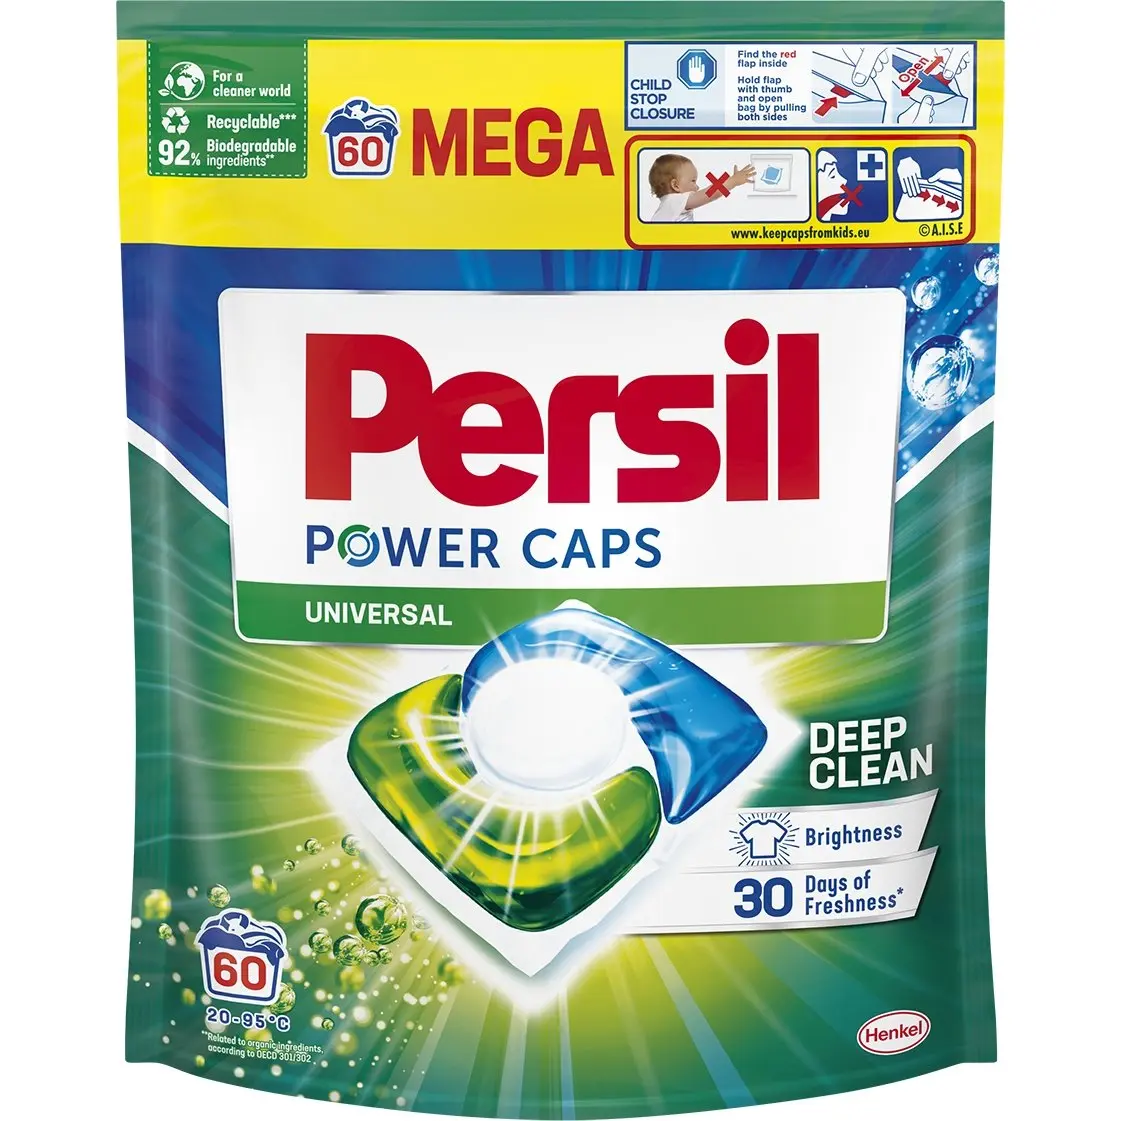 Набор: Стиральные капсулы Persil Color Power Caps 60 шт. + Капсулы для белых и светлых вещей Persil Power Caps Universal Deep Clean 60 шт. - фото 3